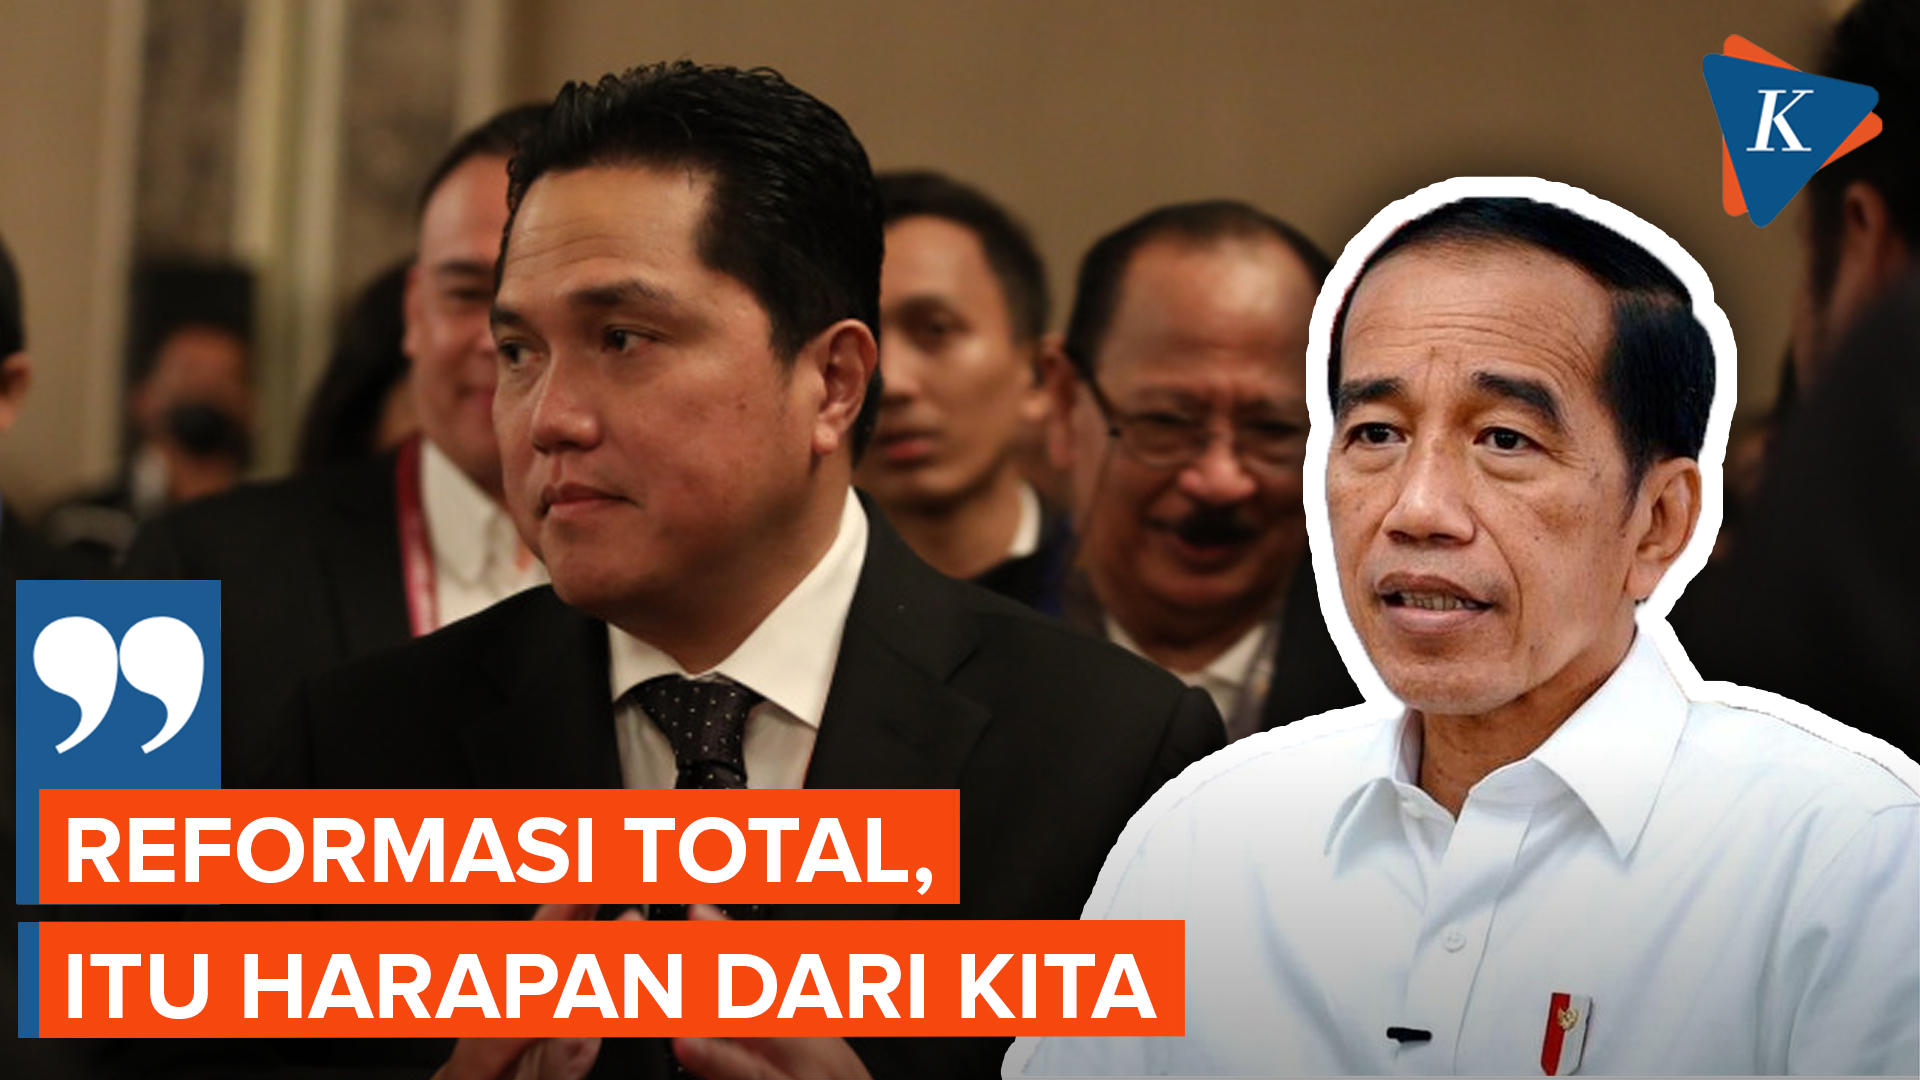 Erick Thohir Jadi Ketum PSSI, Jokowi Inginkan Reformasi Total